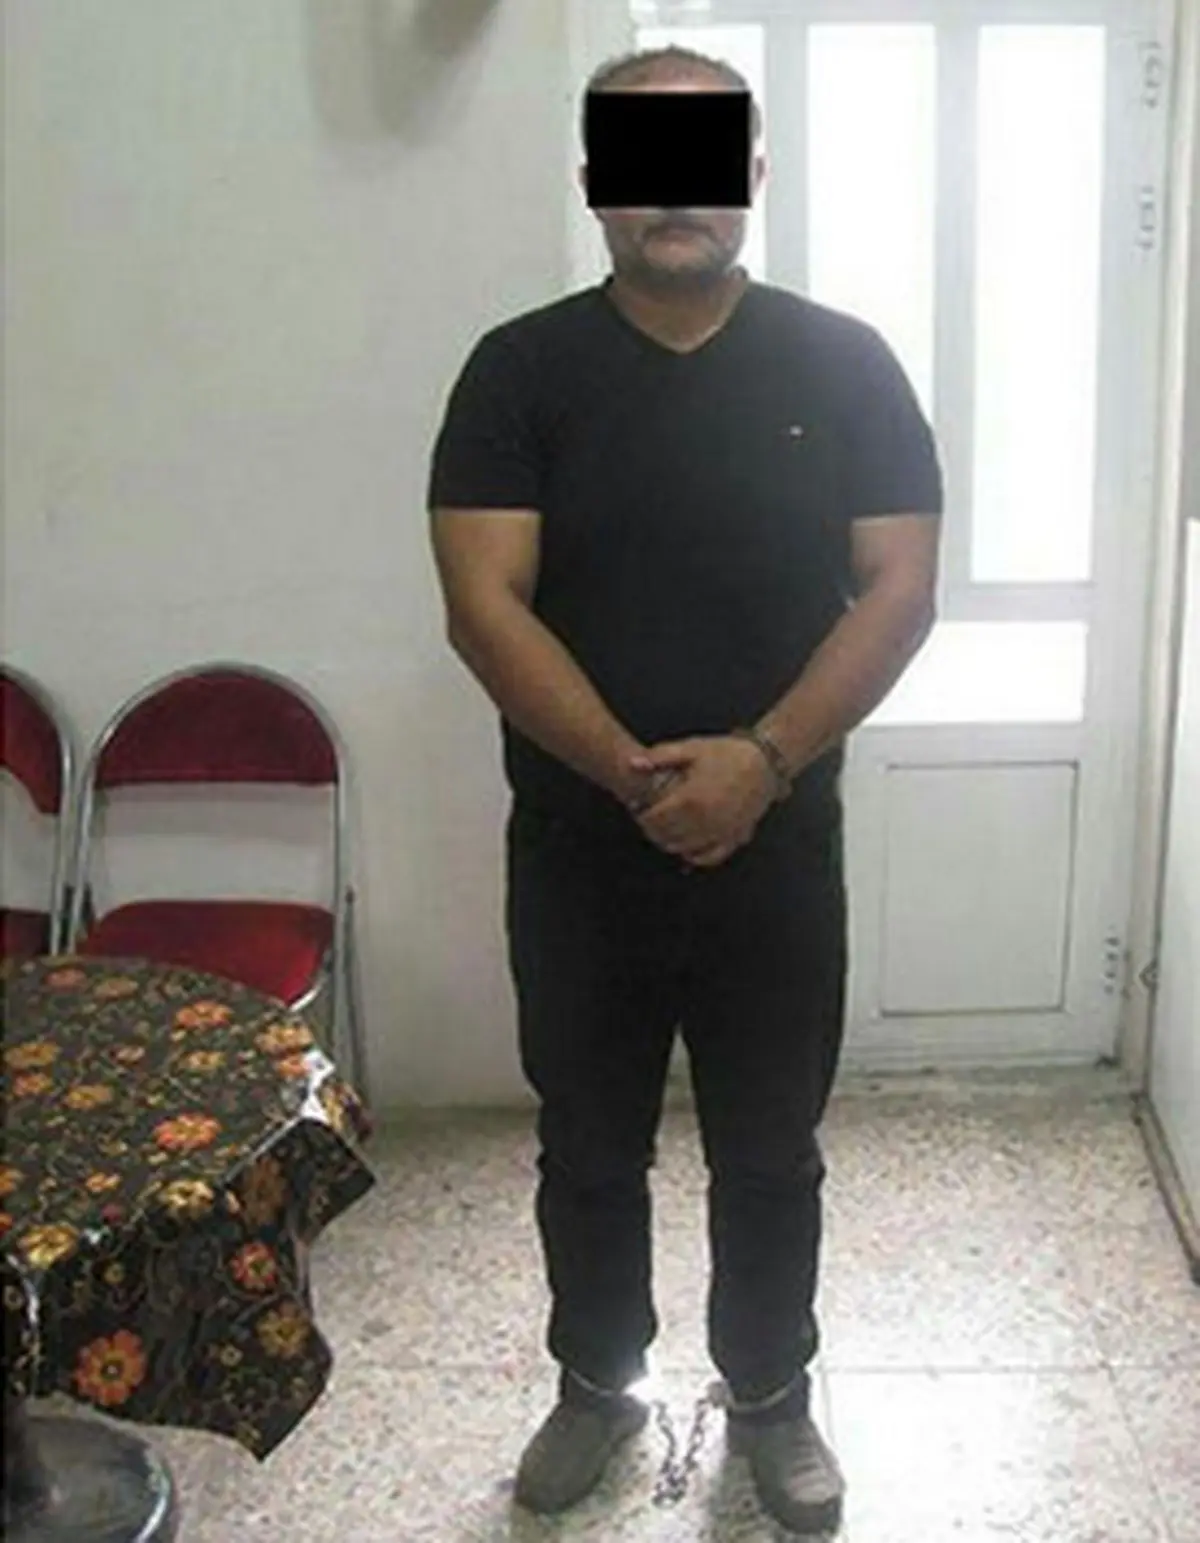 پایان فرار 2 ساله مرد اعدامی از زندان + عکس 